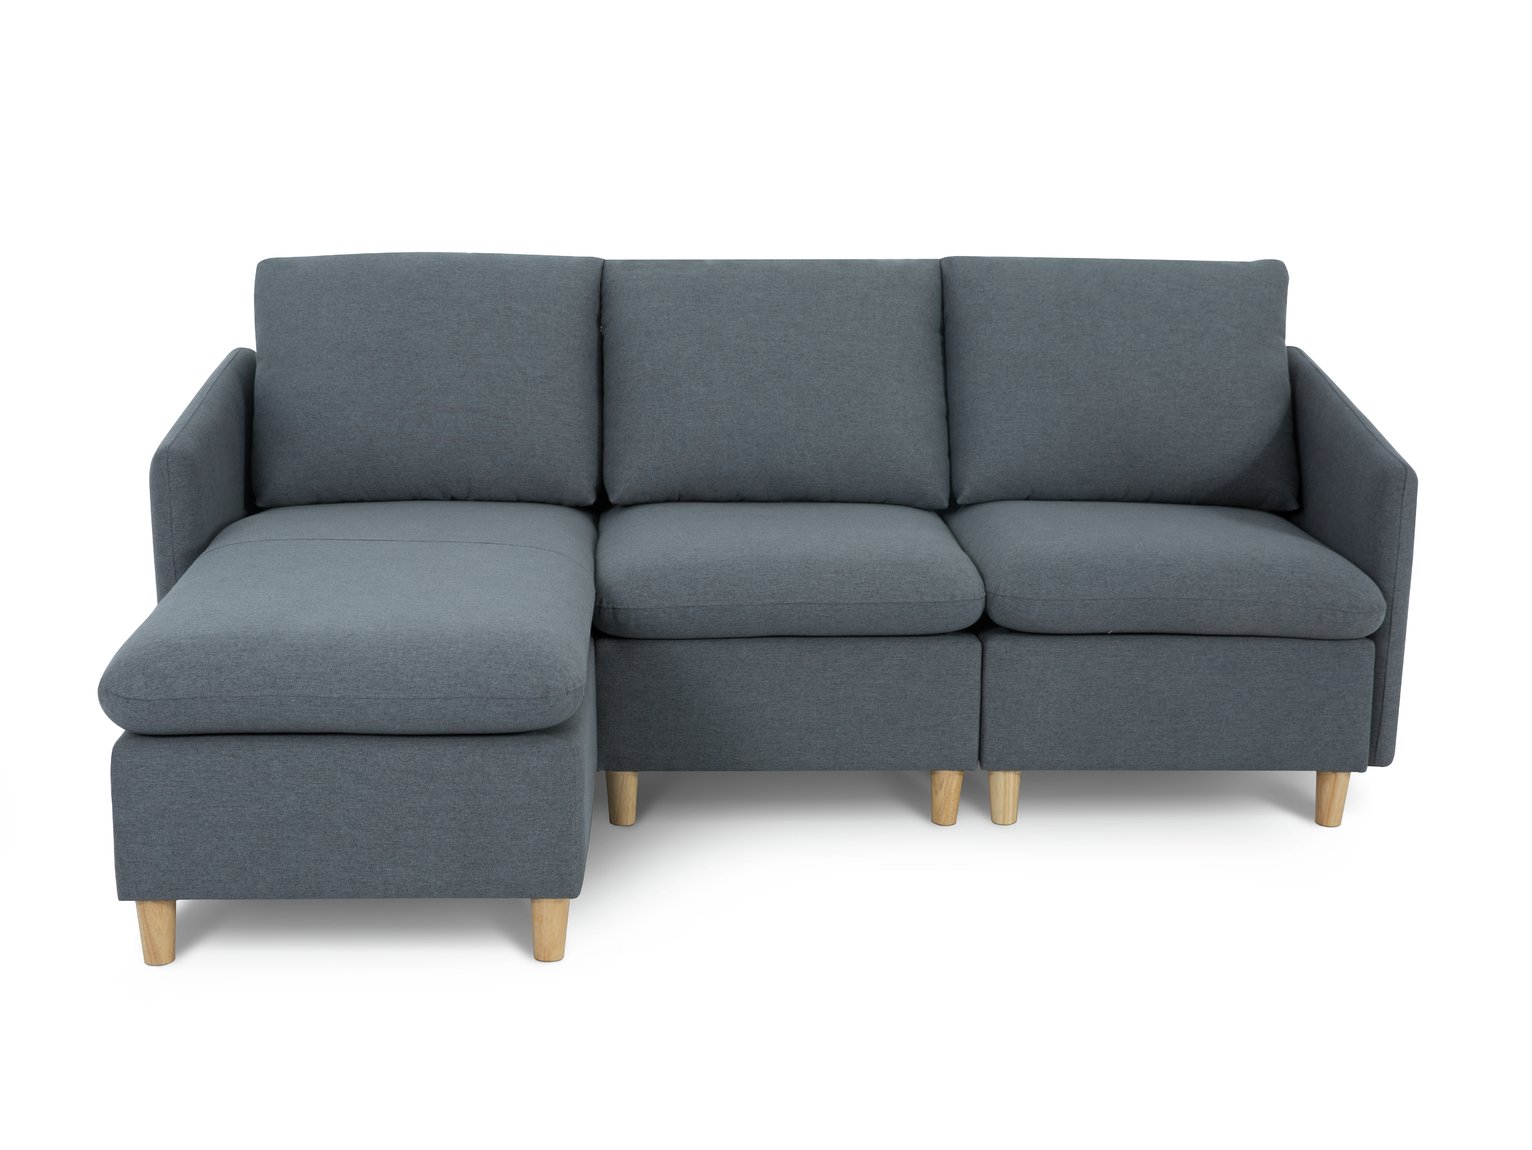 Habitat Mod Reversible Corner Fabric Sofa Review